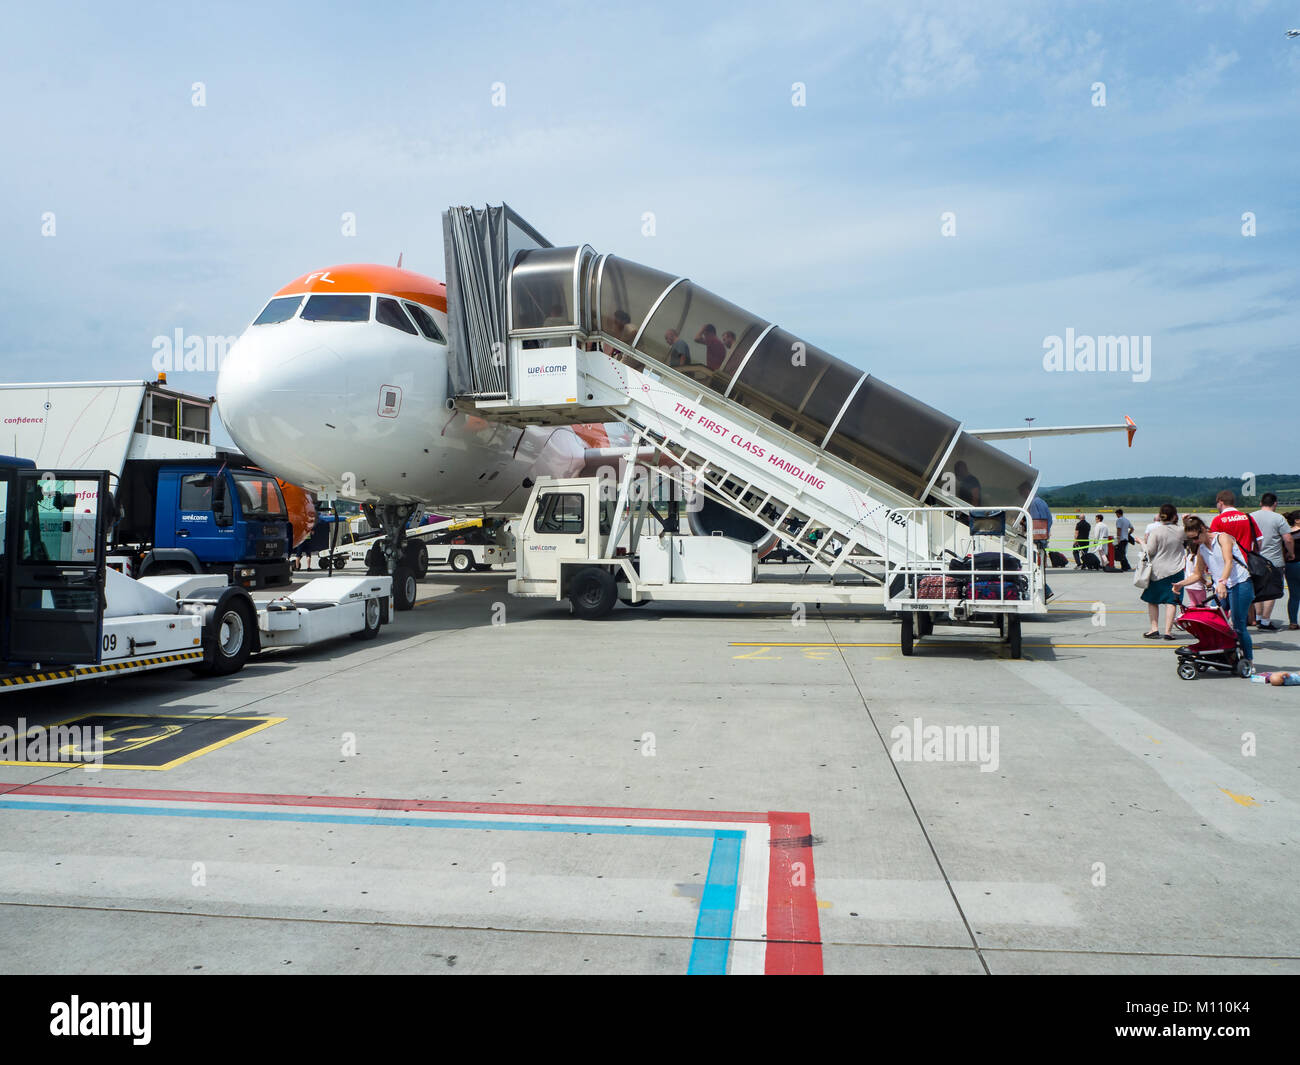 Krakau, Polen - 27. Juni 2017: Treppe Fahrzeug und Passagiere an Bord des Airbus A320 Airliner auf dem Internationalen Flughafen in Krakau Balice Stockfoto